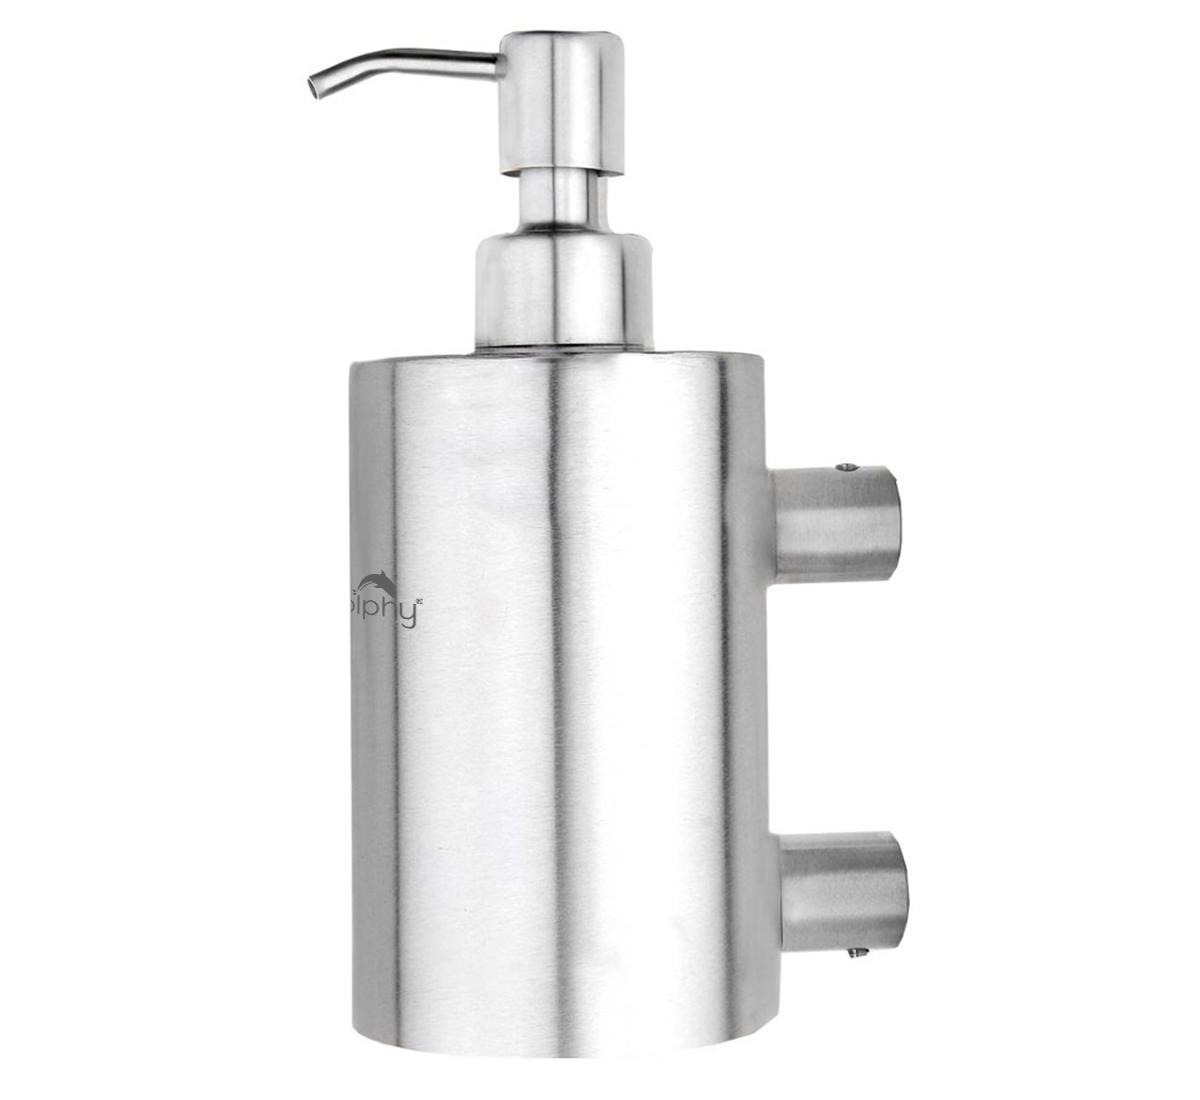 Stainless Steel Manual Soap Dispenser
